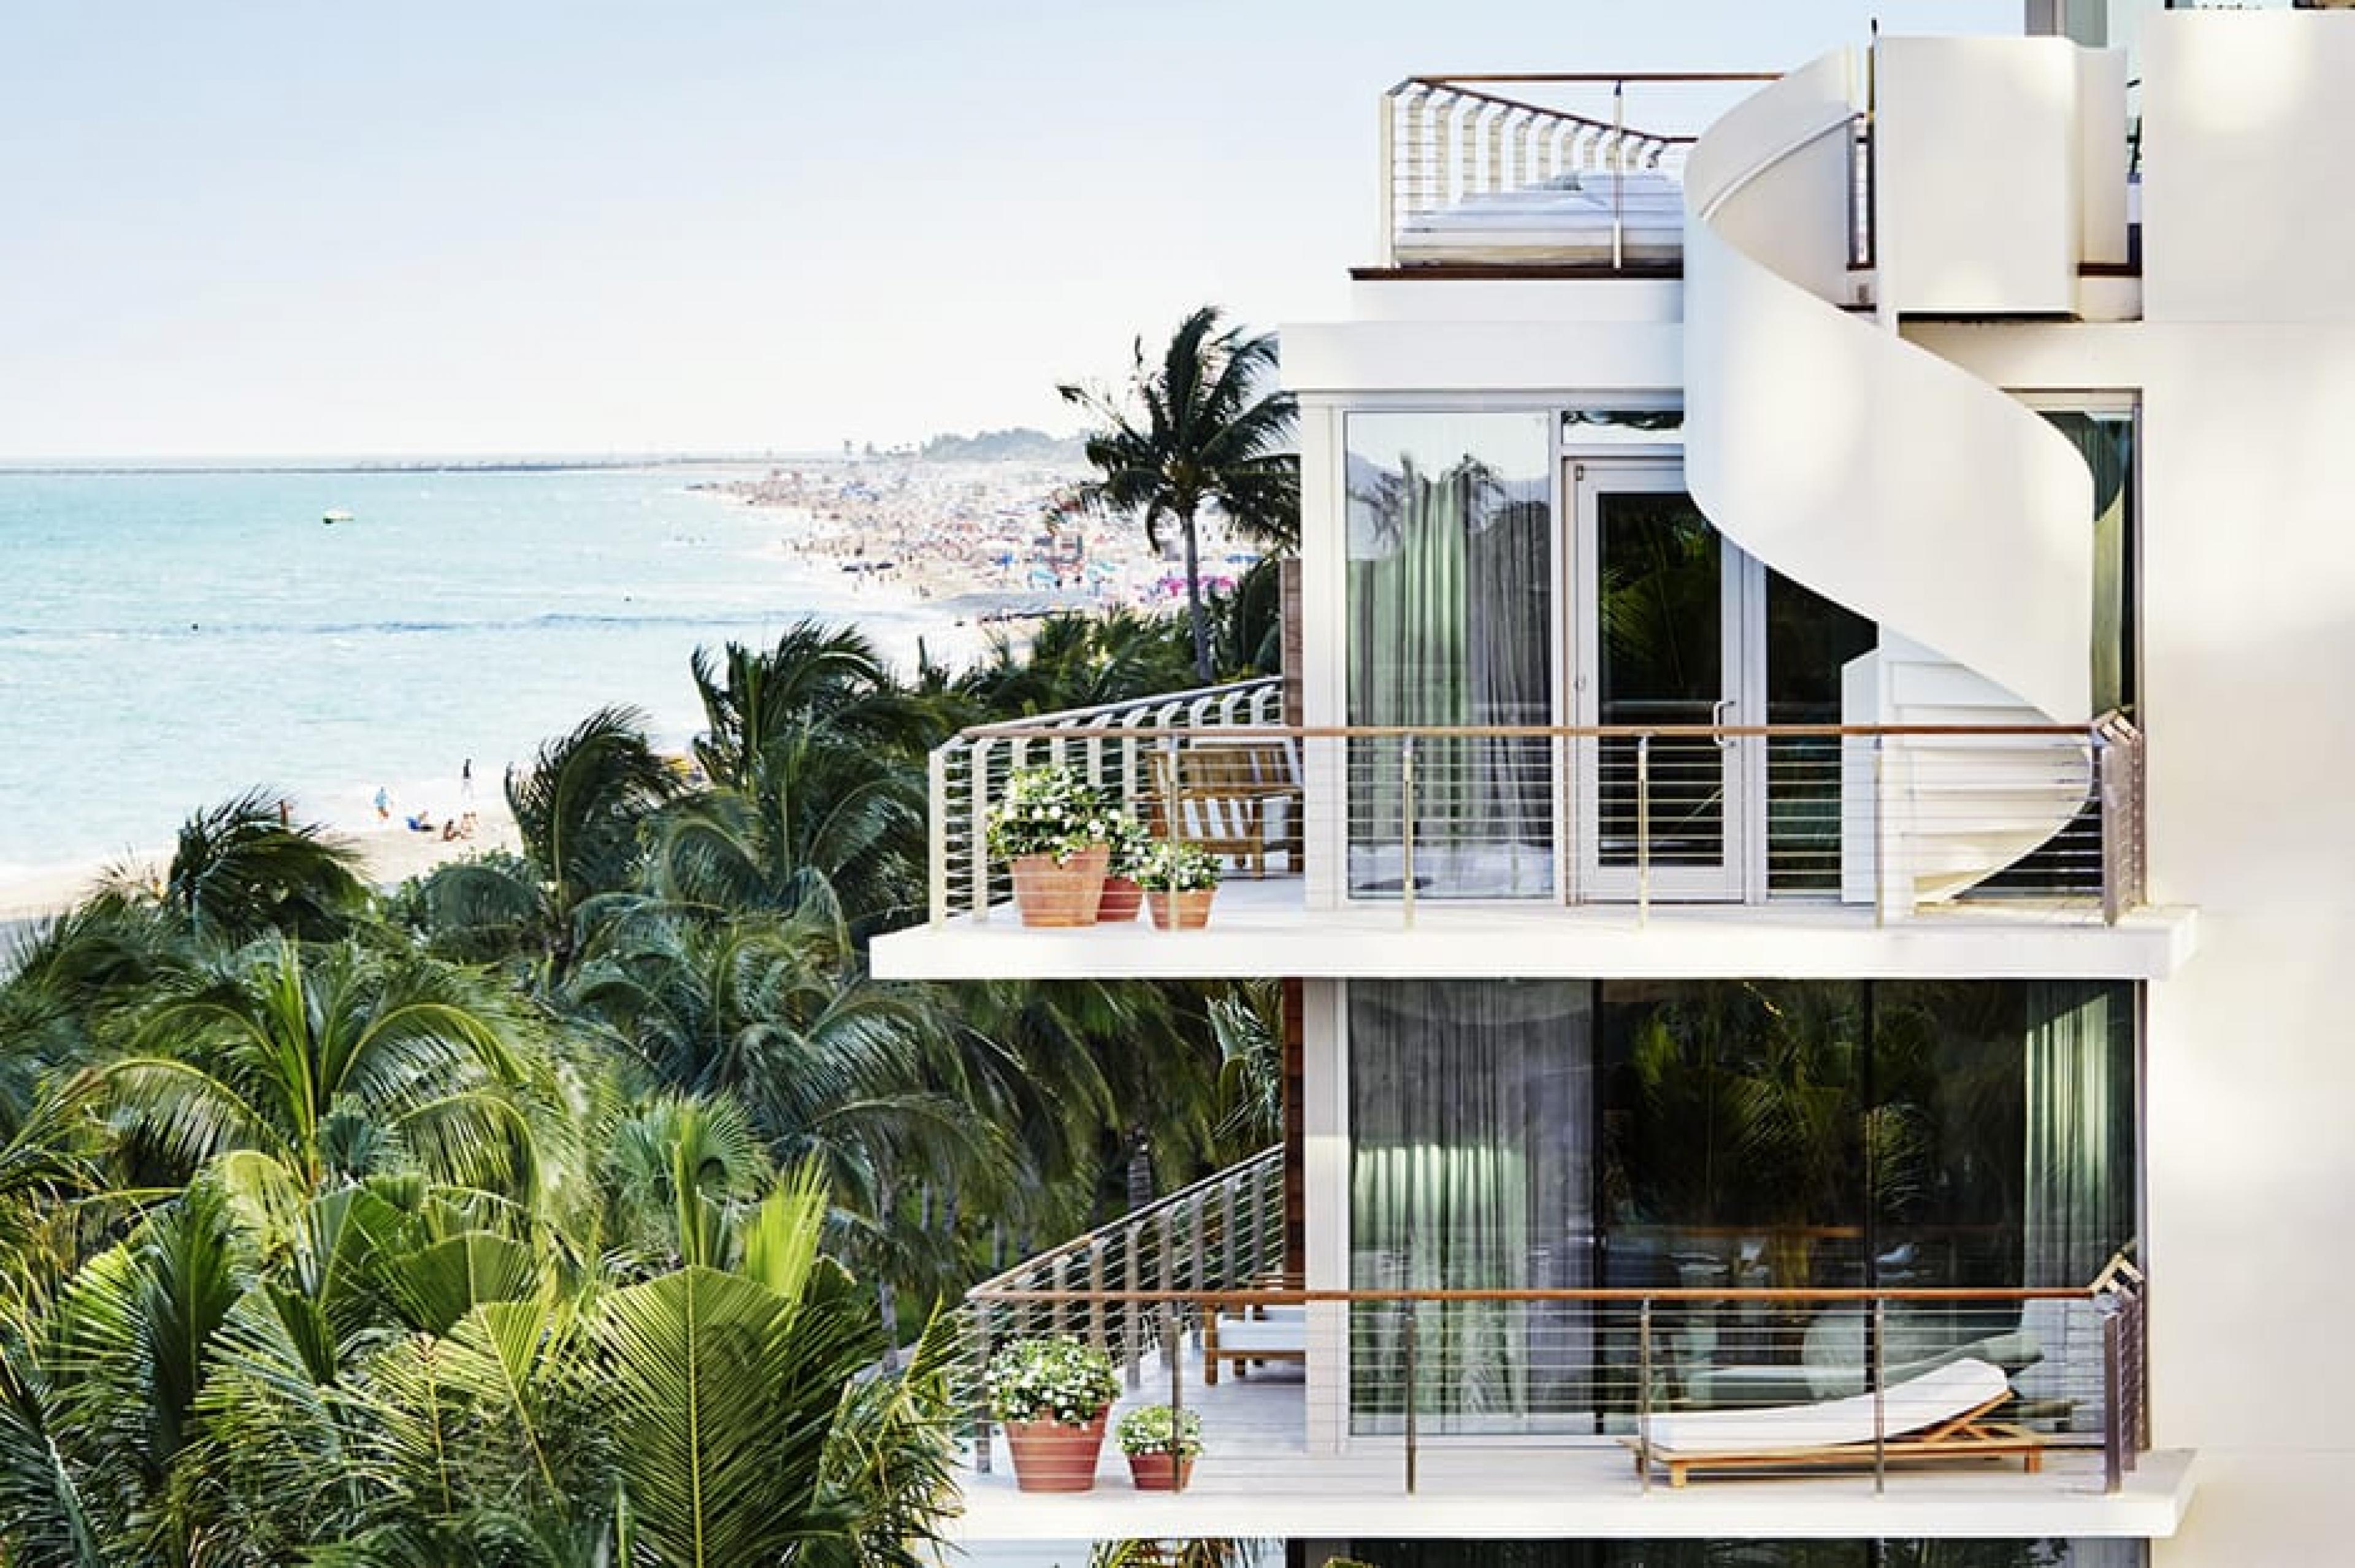 Exterior View - Miami Beach EDITION, Miami, Florida - Courtesy Nicholas Koening